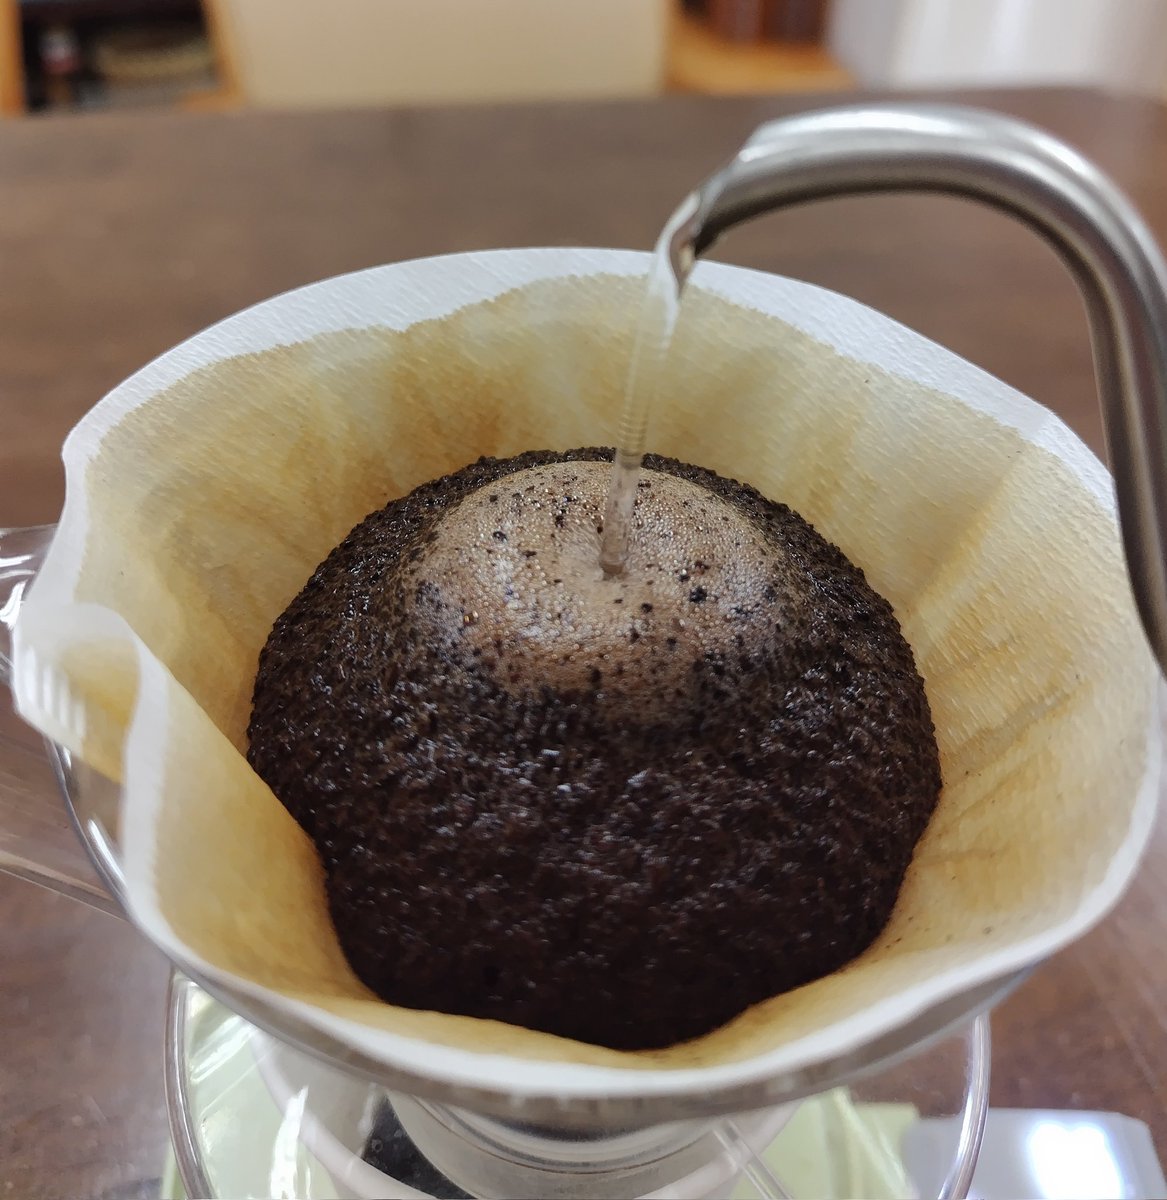 2杯目 会社でペーパードリップ自家焙煎3日経過のエチオピア・シティーロースト 2ハゼモカは酸味が最初に来ますが全体のバランスが良くて中々旨い！ モカのフレーバーも残ってるし今回の焙煎は◎ #自家焙煎 #コーヒー #珈琲